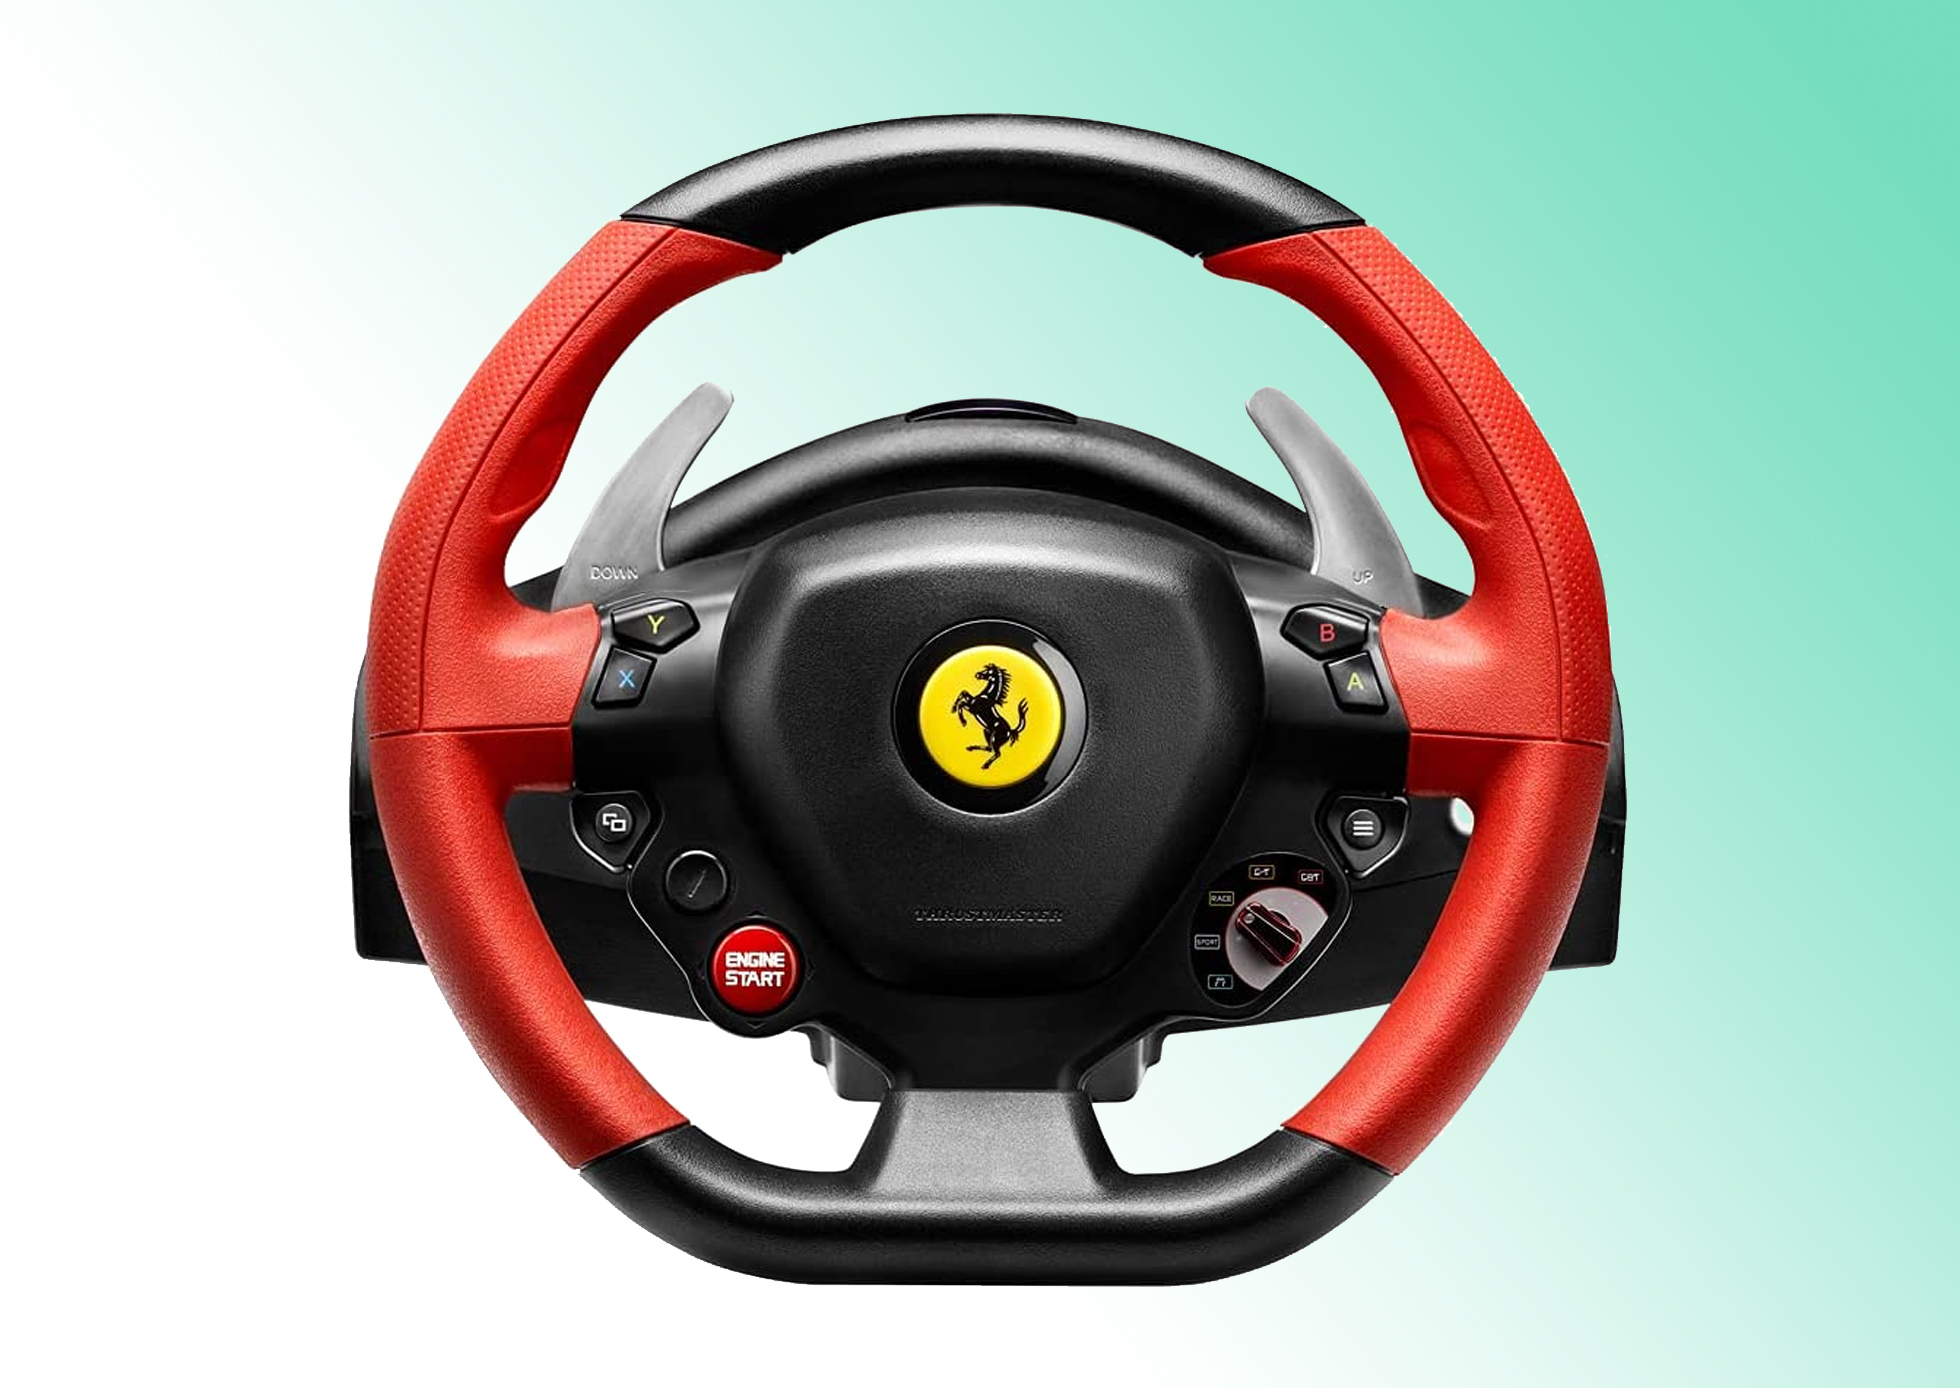 Pruebas y análisis del volante Thrustmaster Ferrari 458 Spider